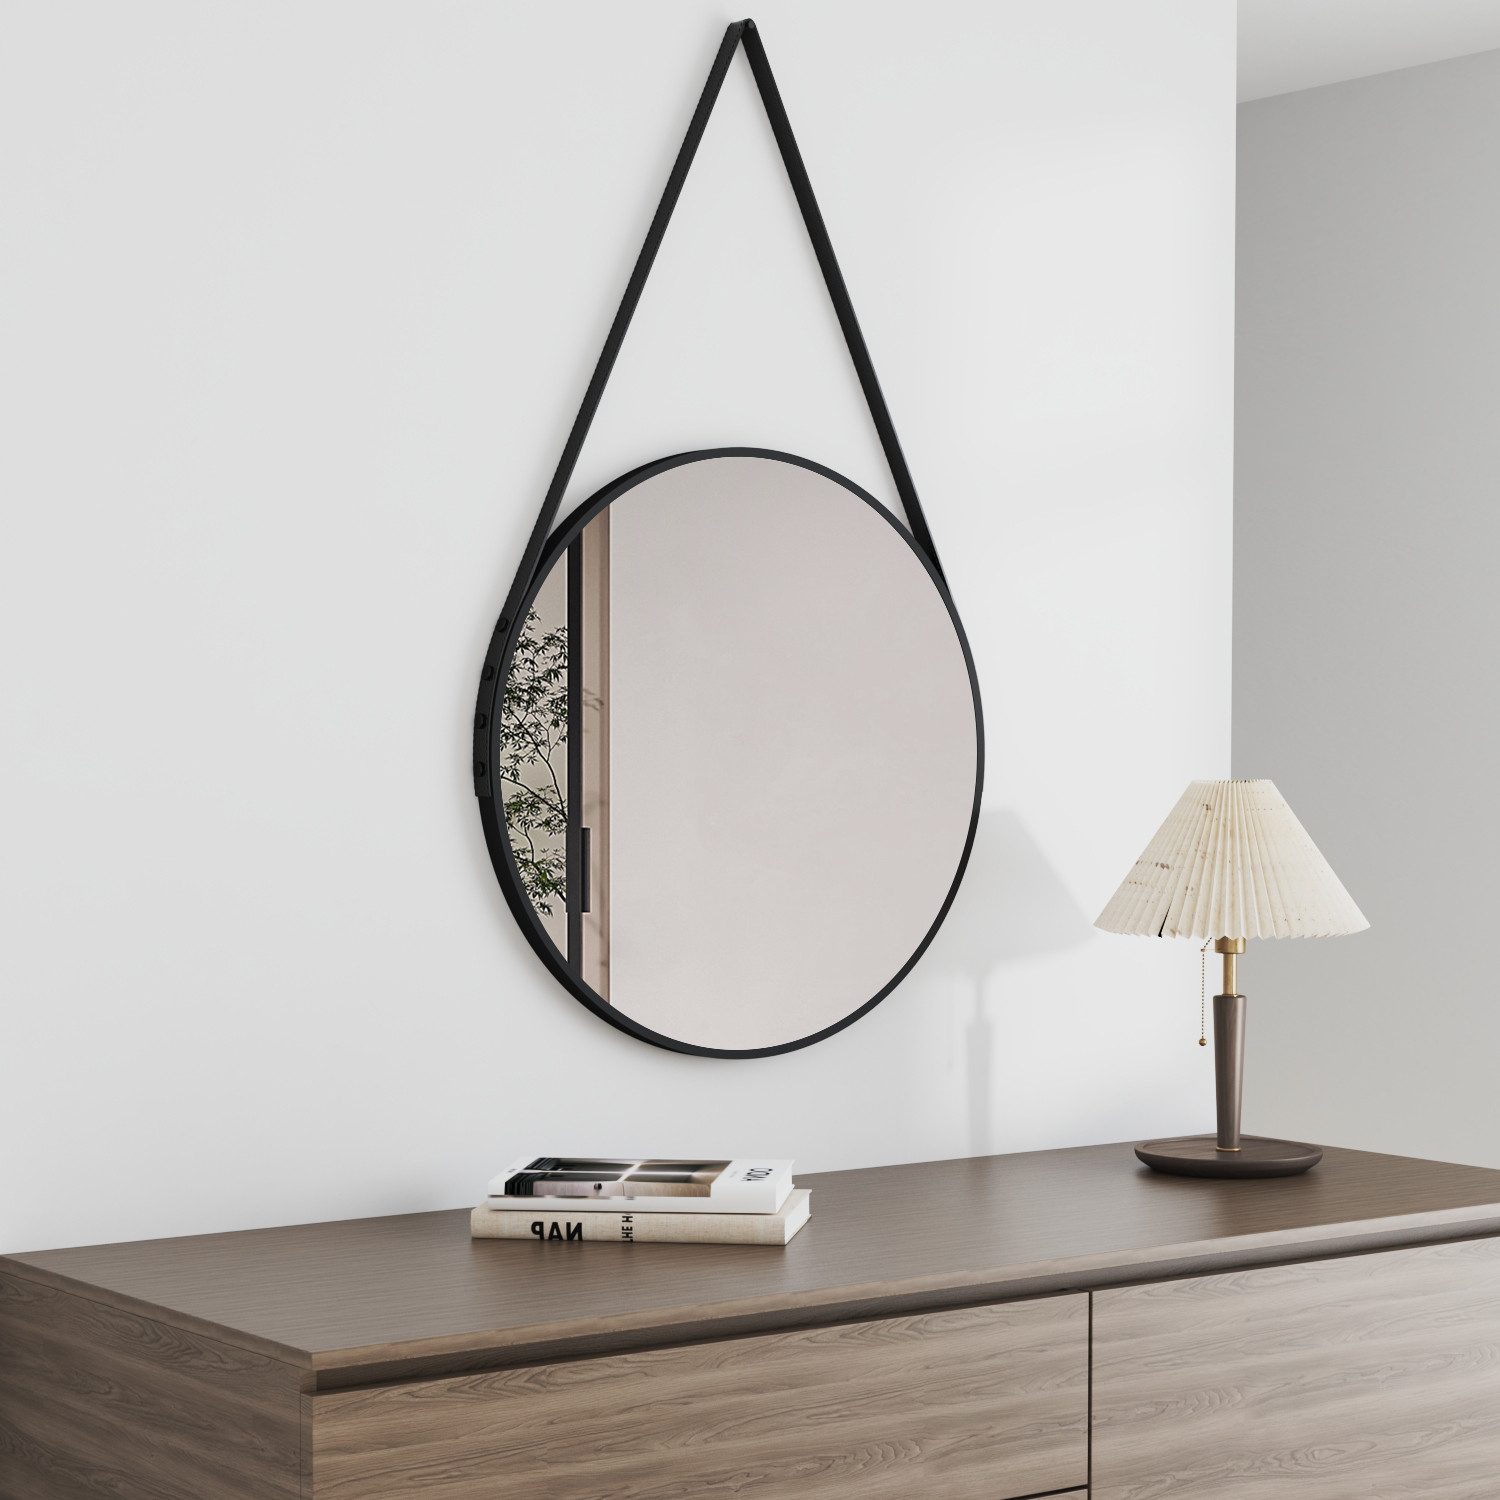 Boromal Spiegel für Flur Bad Schlafzimmer Wohnzimmer Friseurladen Hotel (Wandspiegel Schwarz, 60x60, 50x50), mit Verstellbarer Riemen und Metall Rahmen